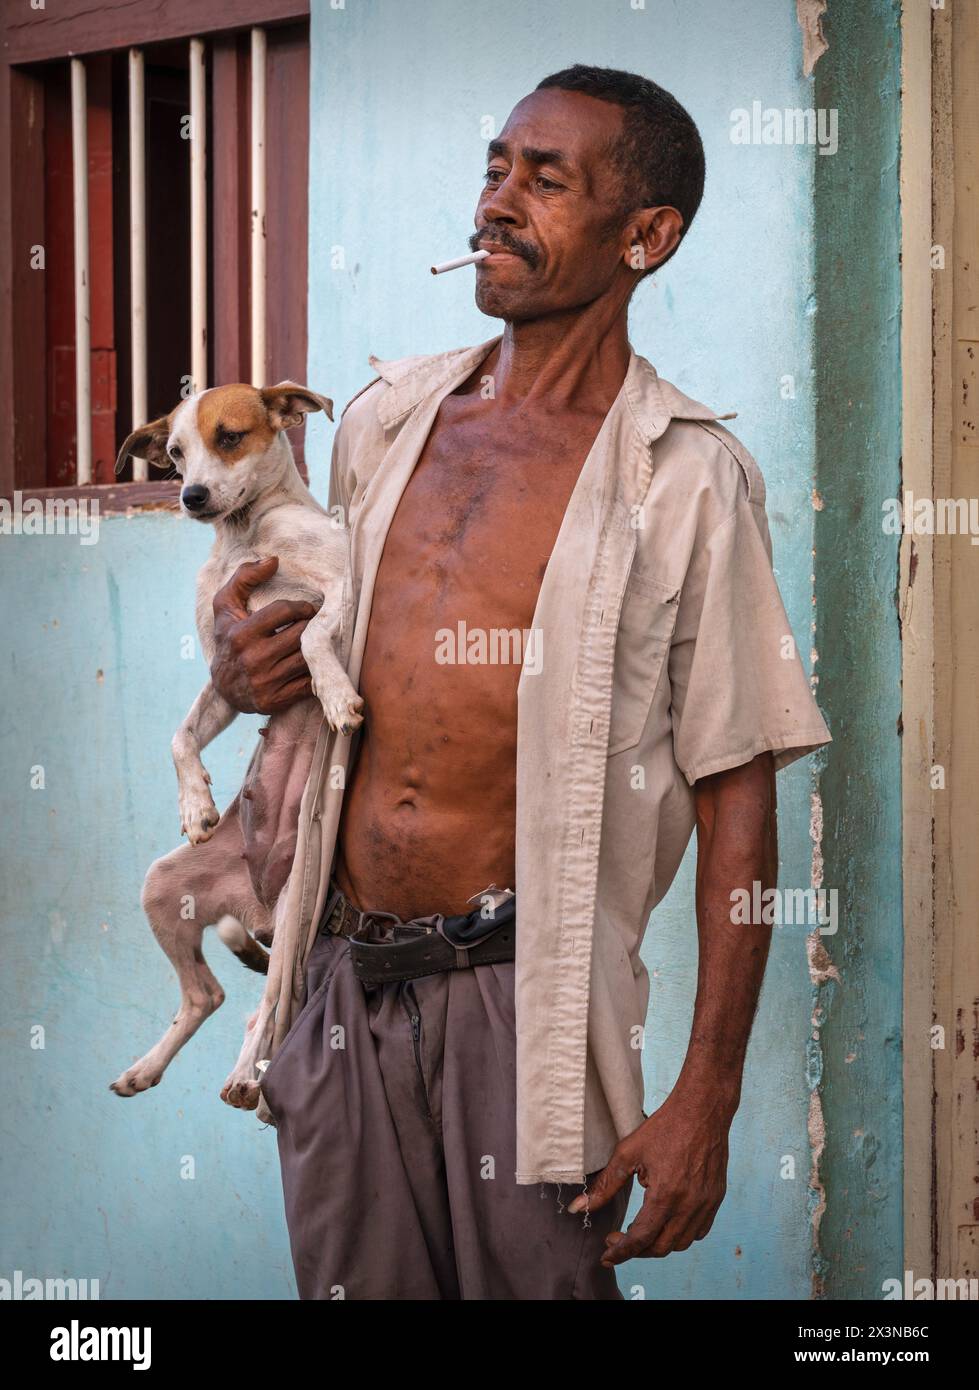 Homme fumant et tenant fièrement son chien posant pour une photographie dans les ruelles de la vieille ville, Trinidad, Cuba. Banque D'Images